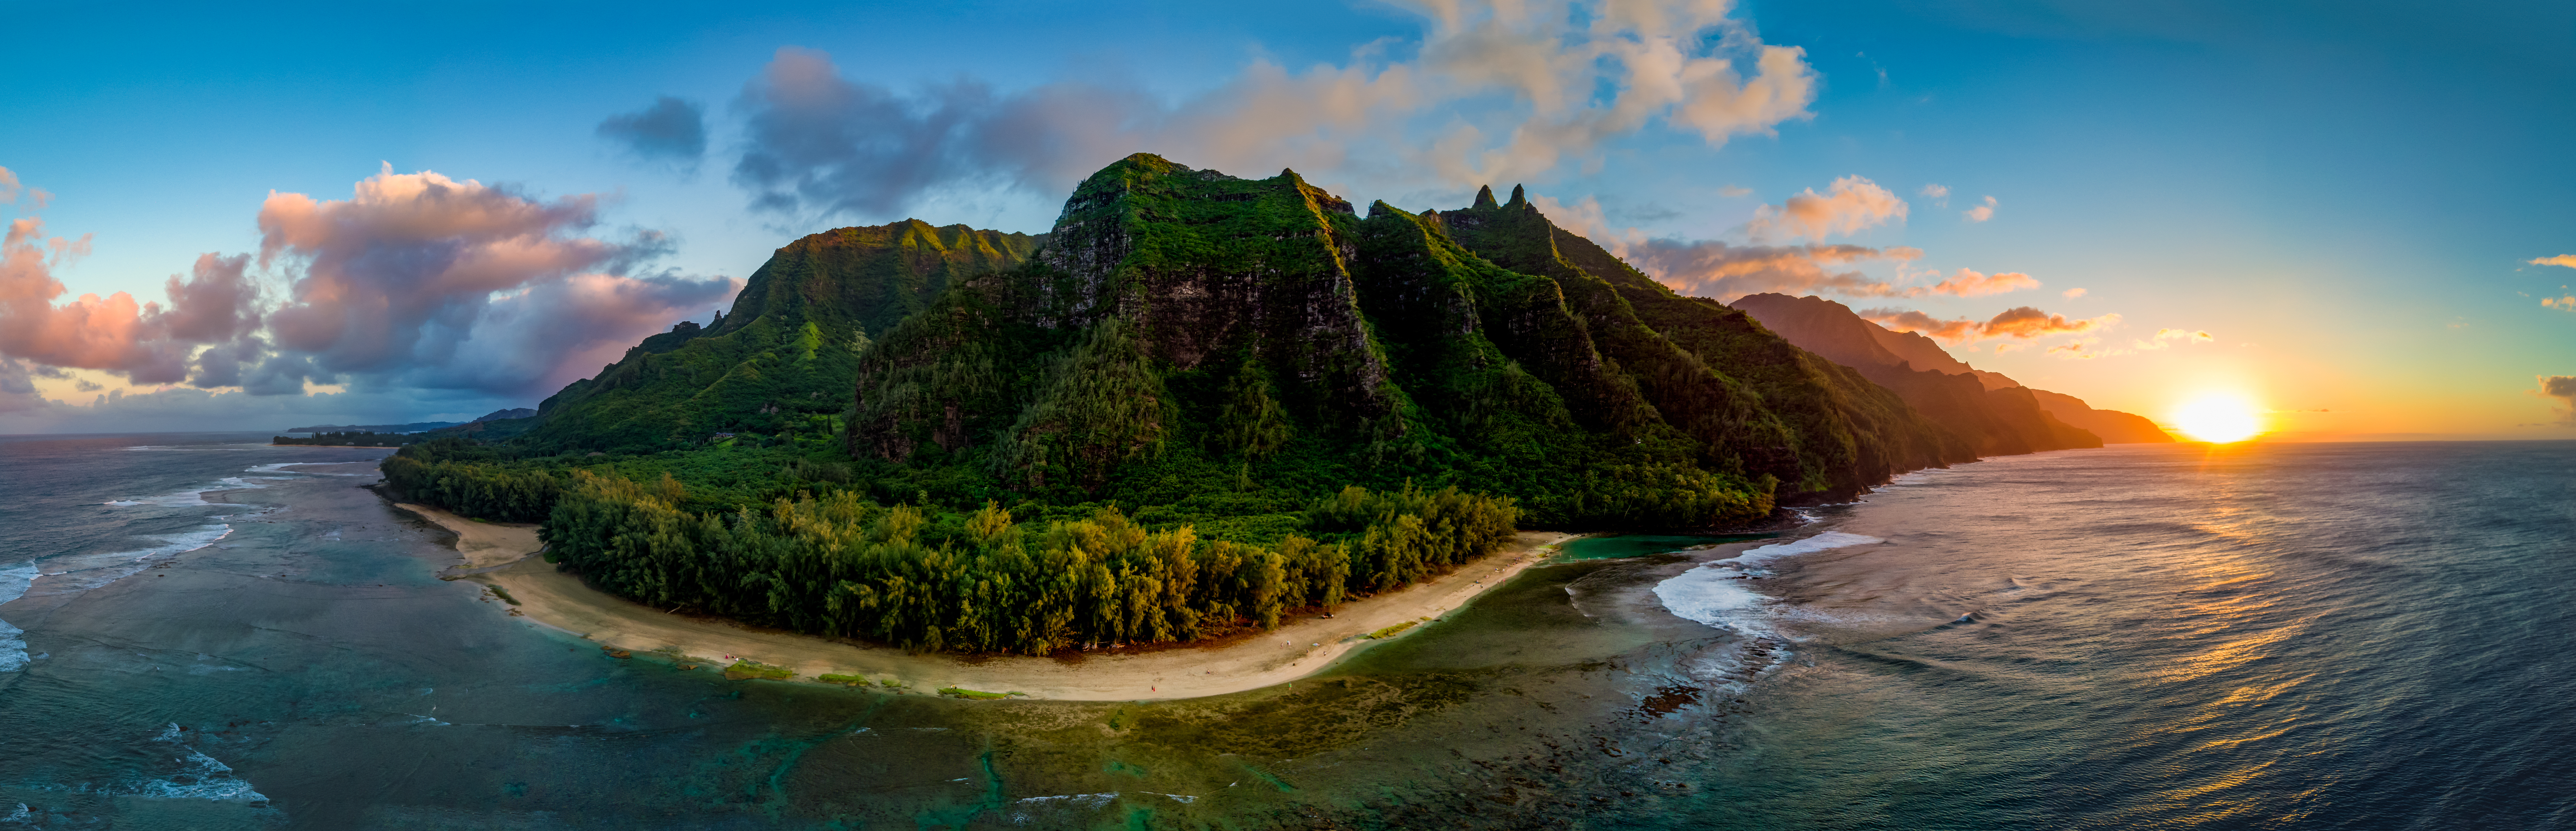 Panorama of Hawaii's Na Pali coast